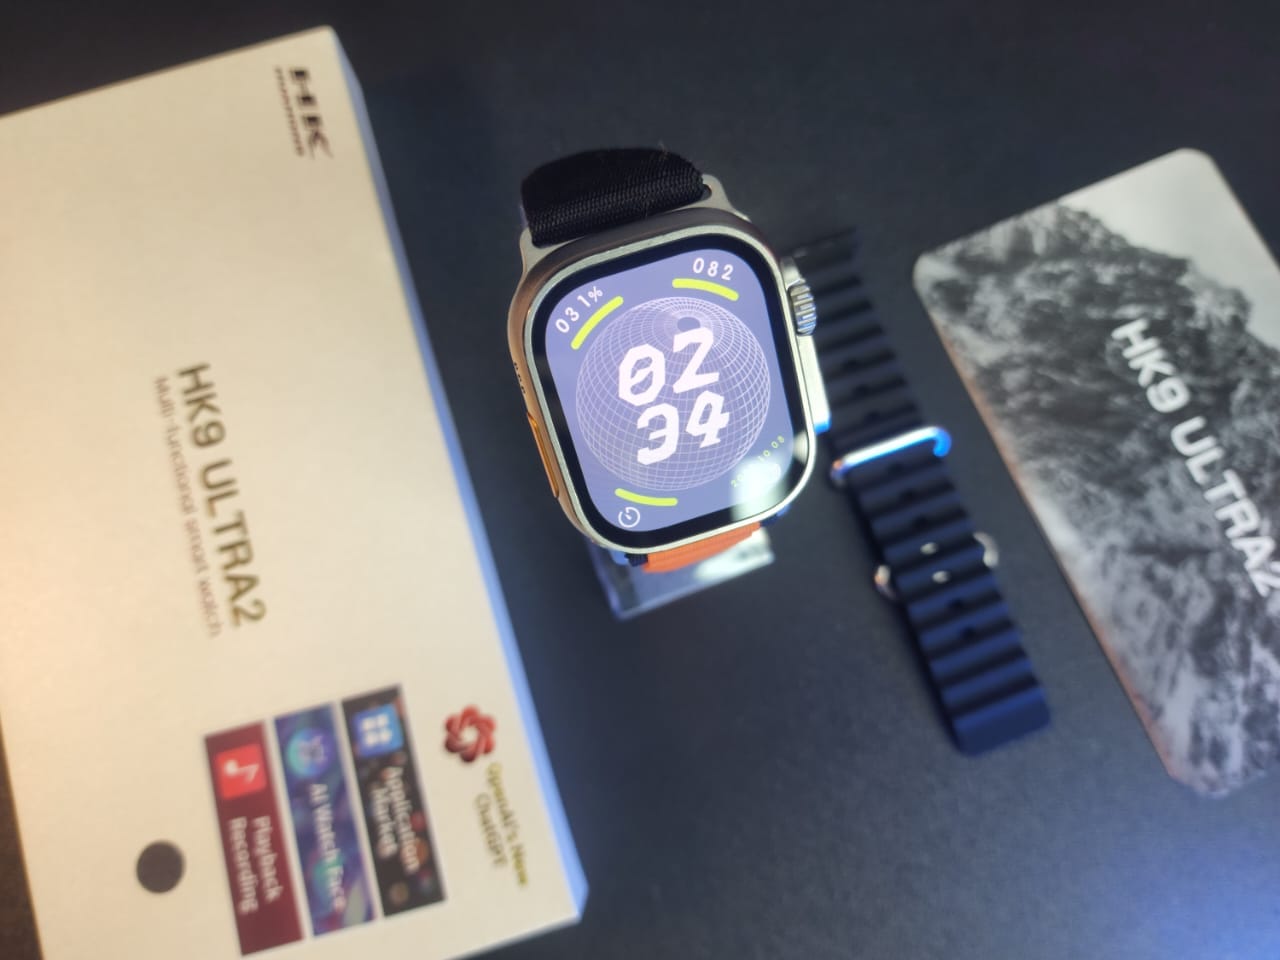 Hk9 ultra 2 smart watch